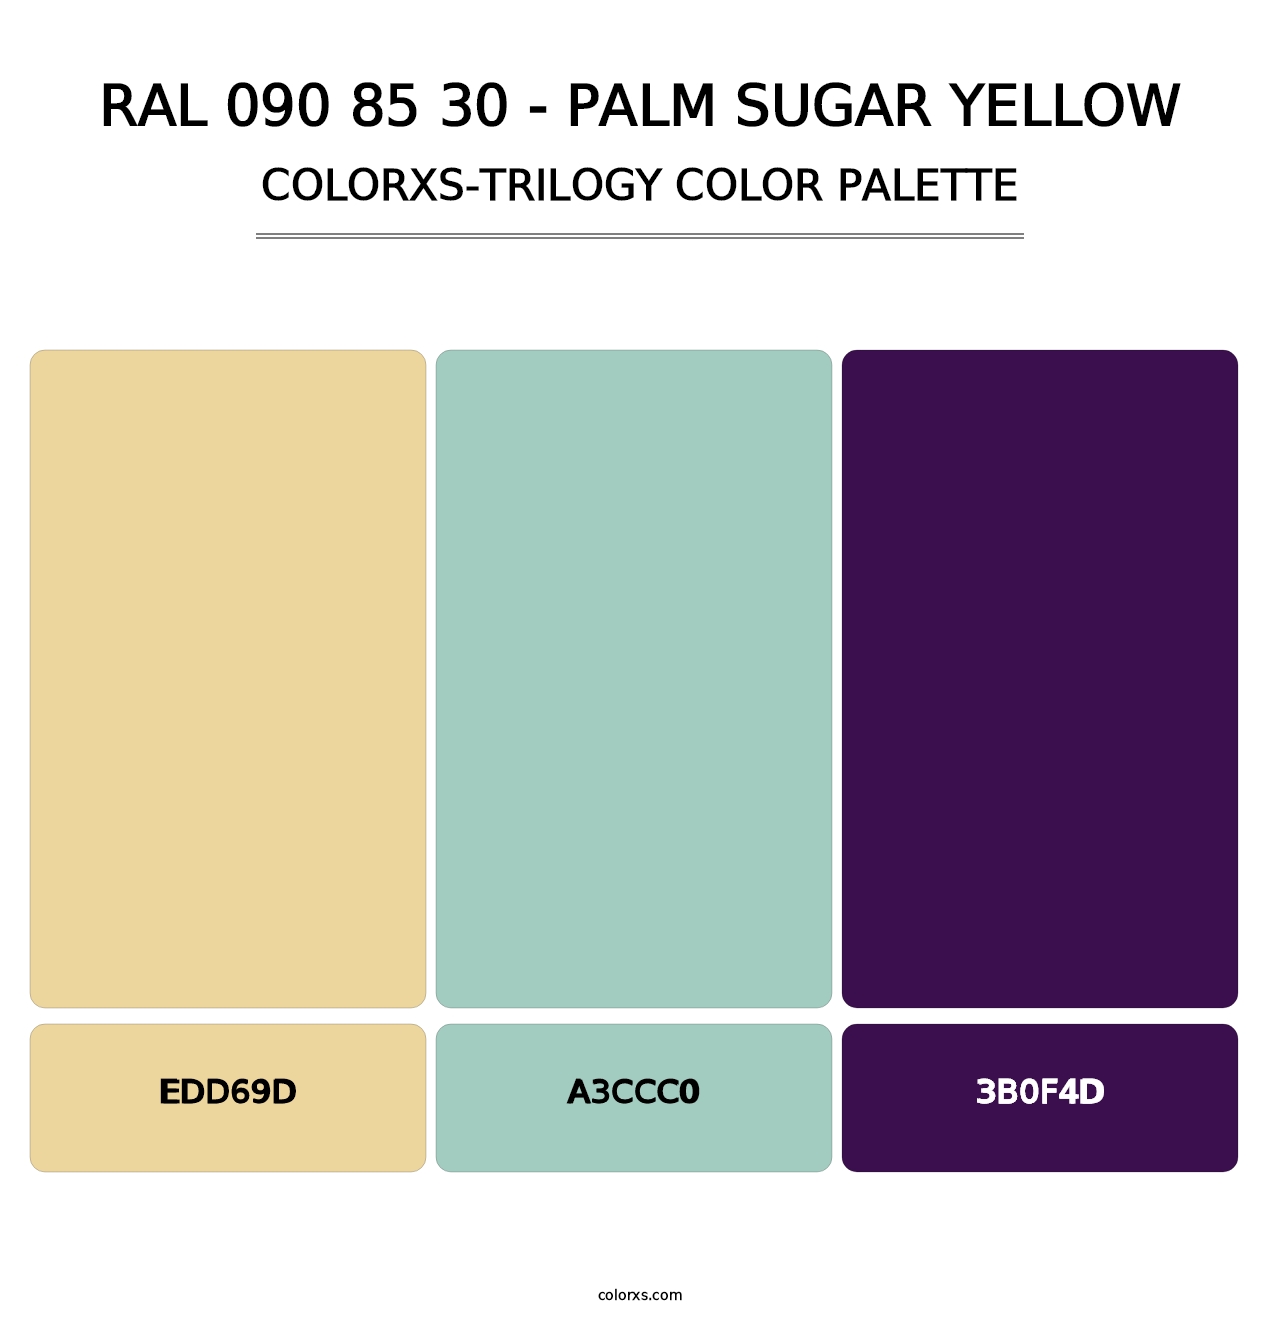 RAL 090 85 30 - Palm Sugar Yellow - Colorxs Trilogy Palette